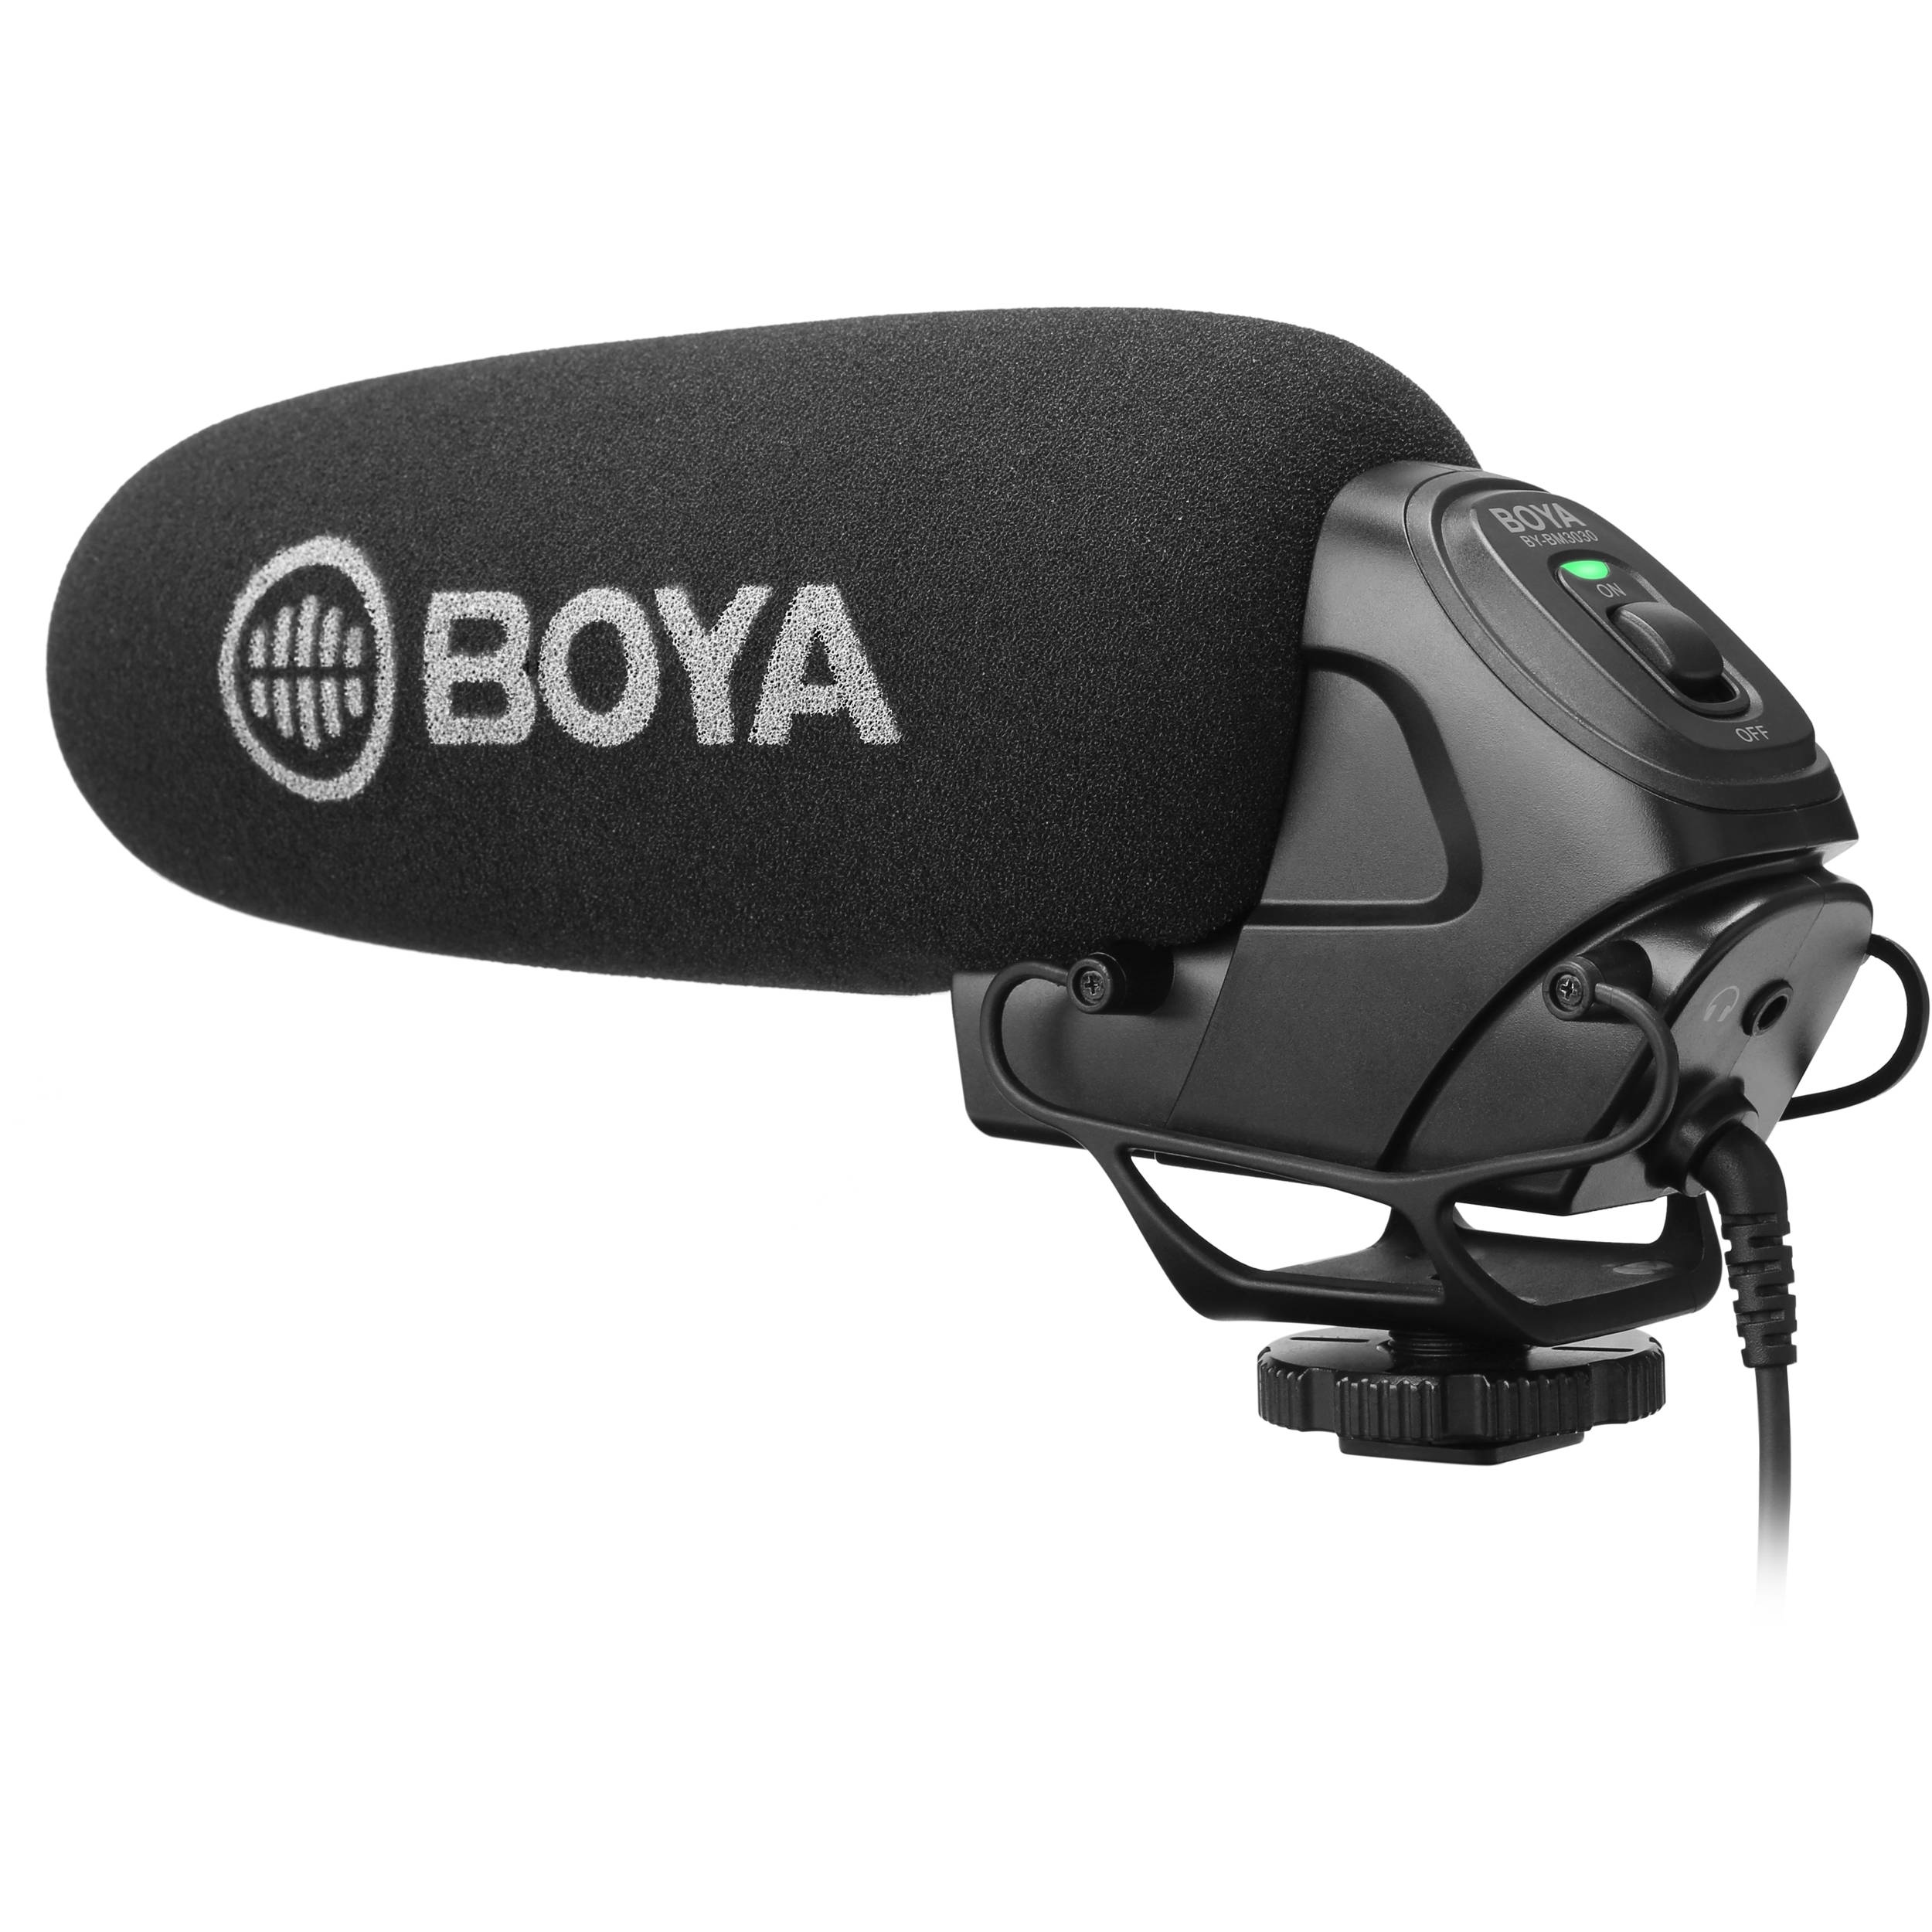 Микрофоны для ТВ и радио Boya BY-BM3030 видеозапись интервью фотографии стерео конденсаторный микрофон однонаправленный микрофон для видеокамер sony panosonic xlr интерфейс